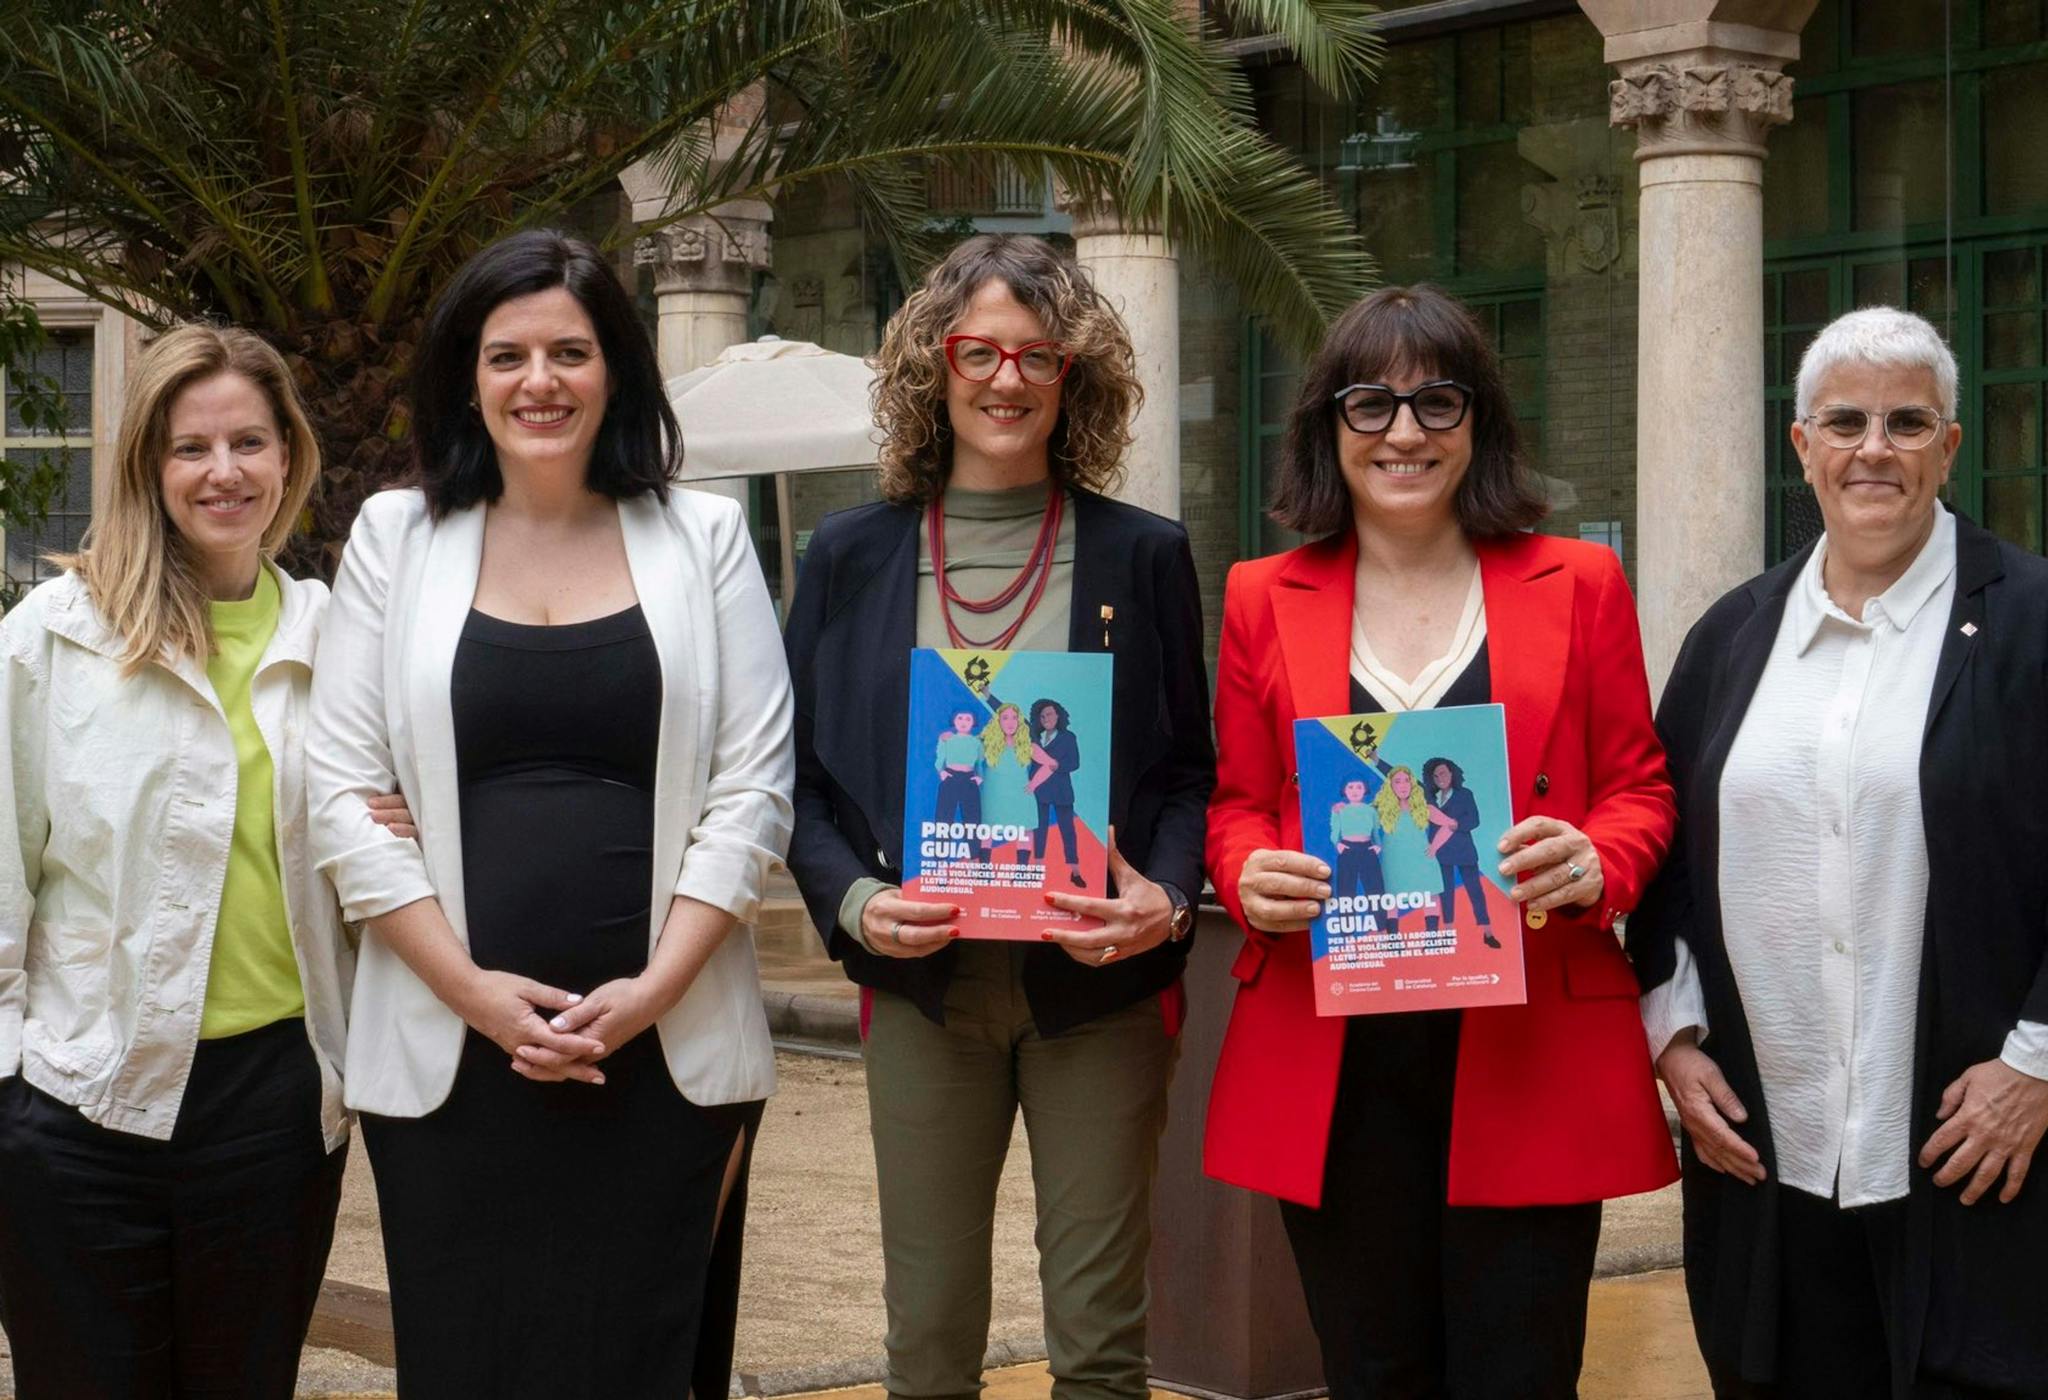 Presentación del Protocolo guía para la prevención de las violencias machistas y LGTBi-fóbicas, con la consellera Tània Verge y la presidenta de la Acadèmia del Cinema Catalá, Judith Colell, en el centro